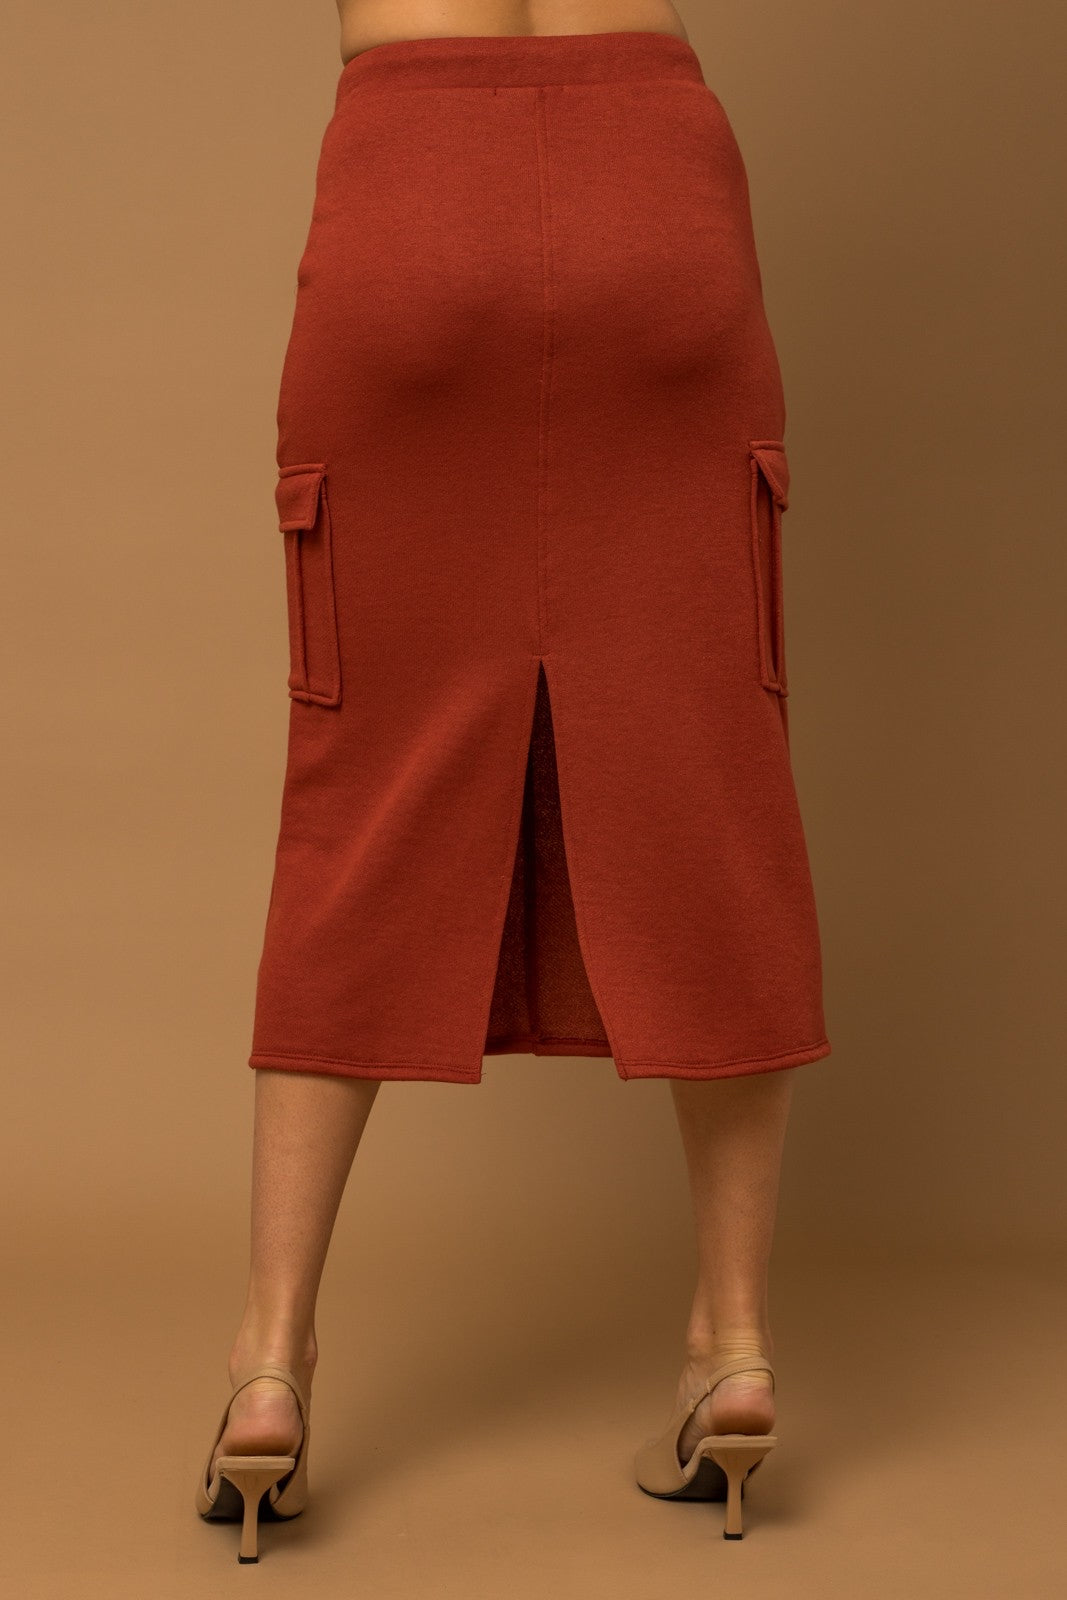 Firehouse Skirt